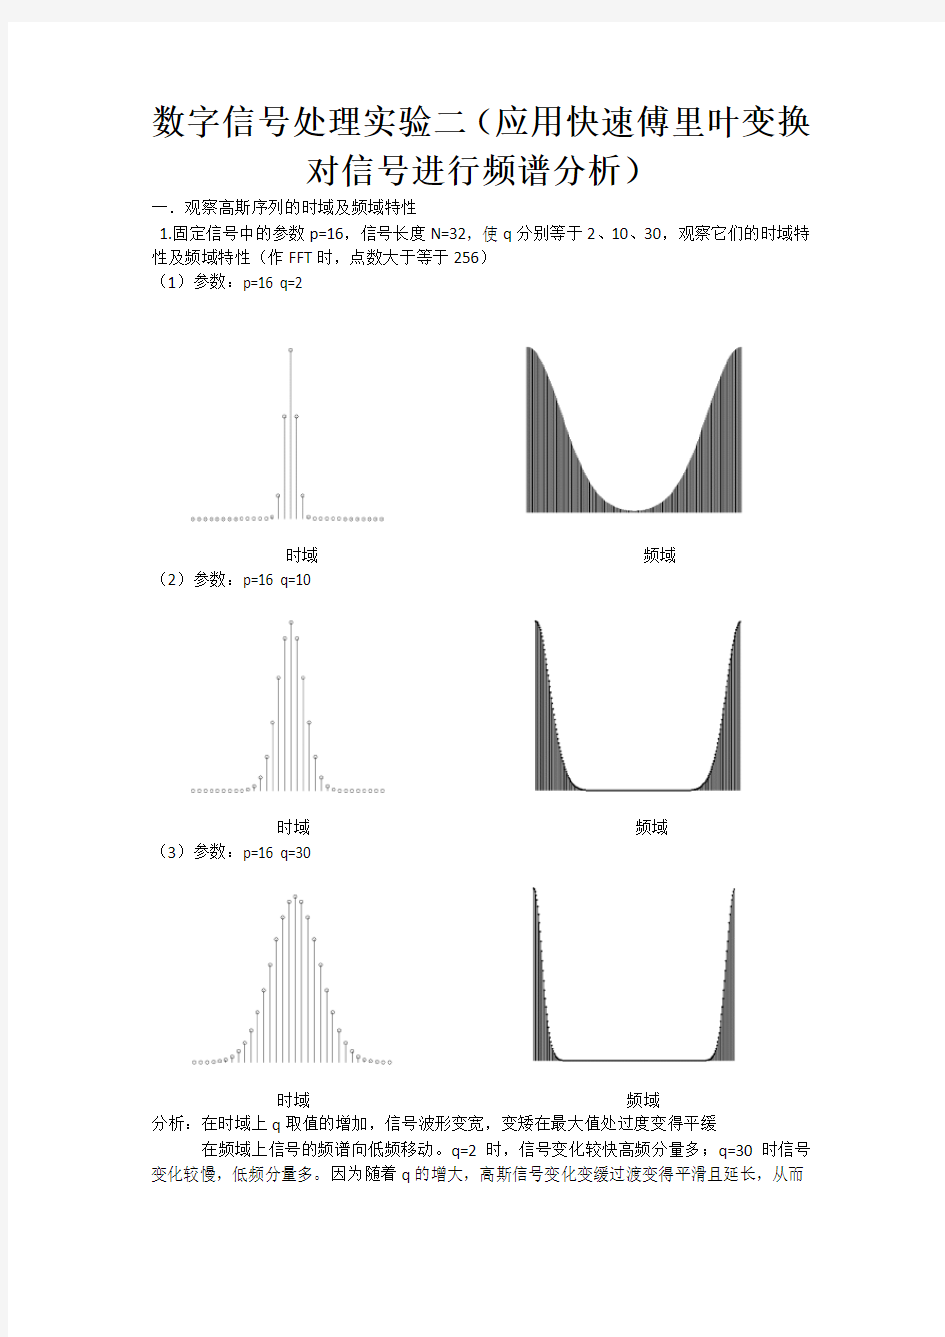 数字信号处理实验二(应用快速傅里叶变换对信号进行频谱分析)